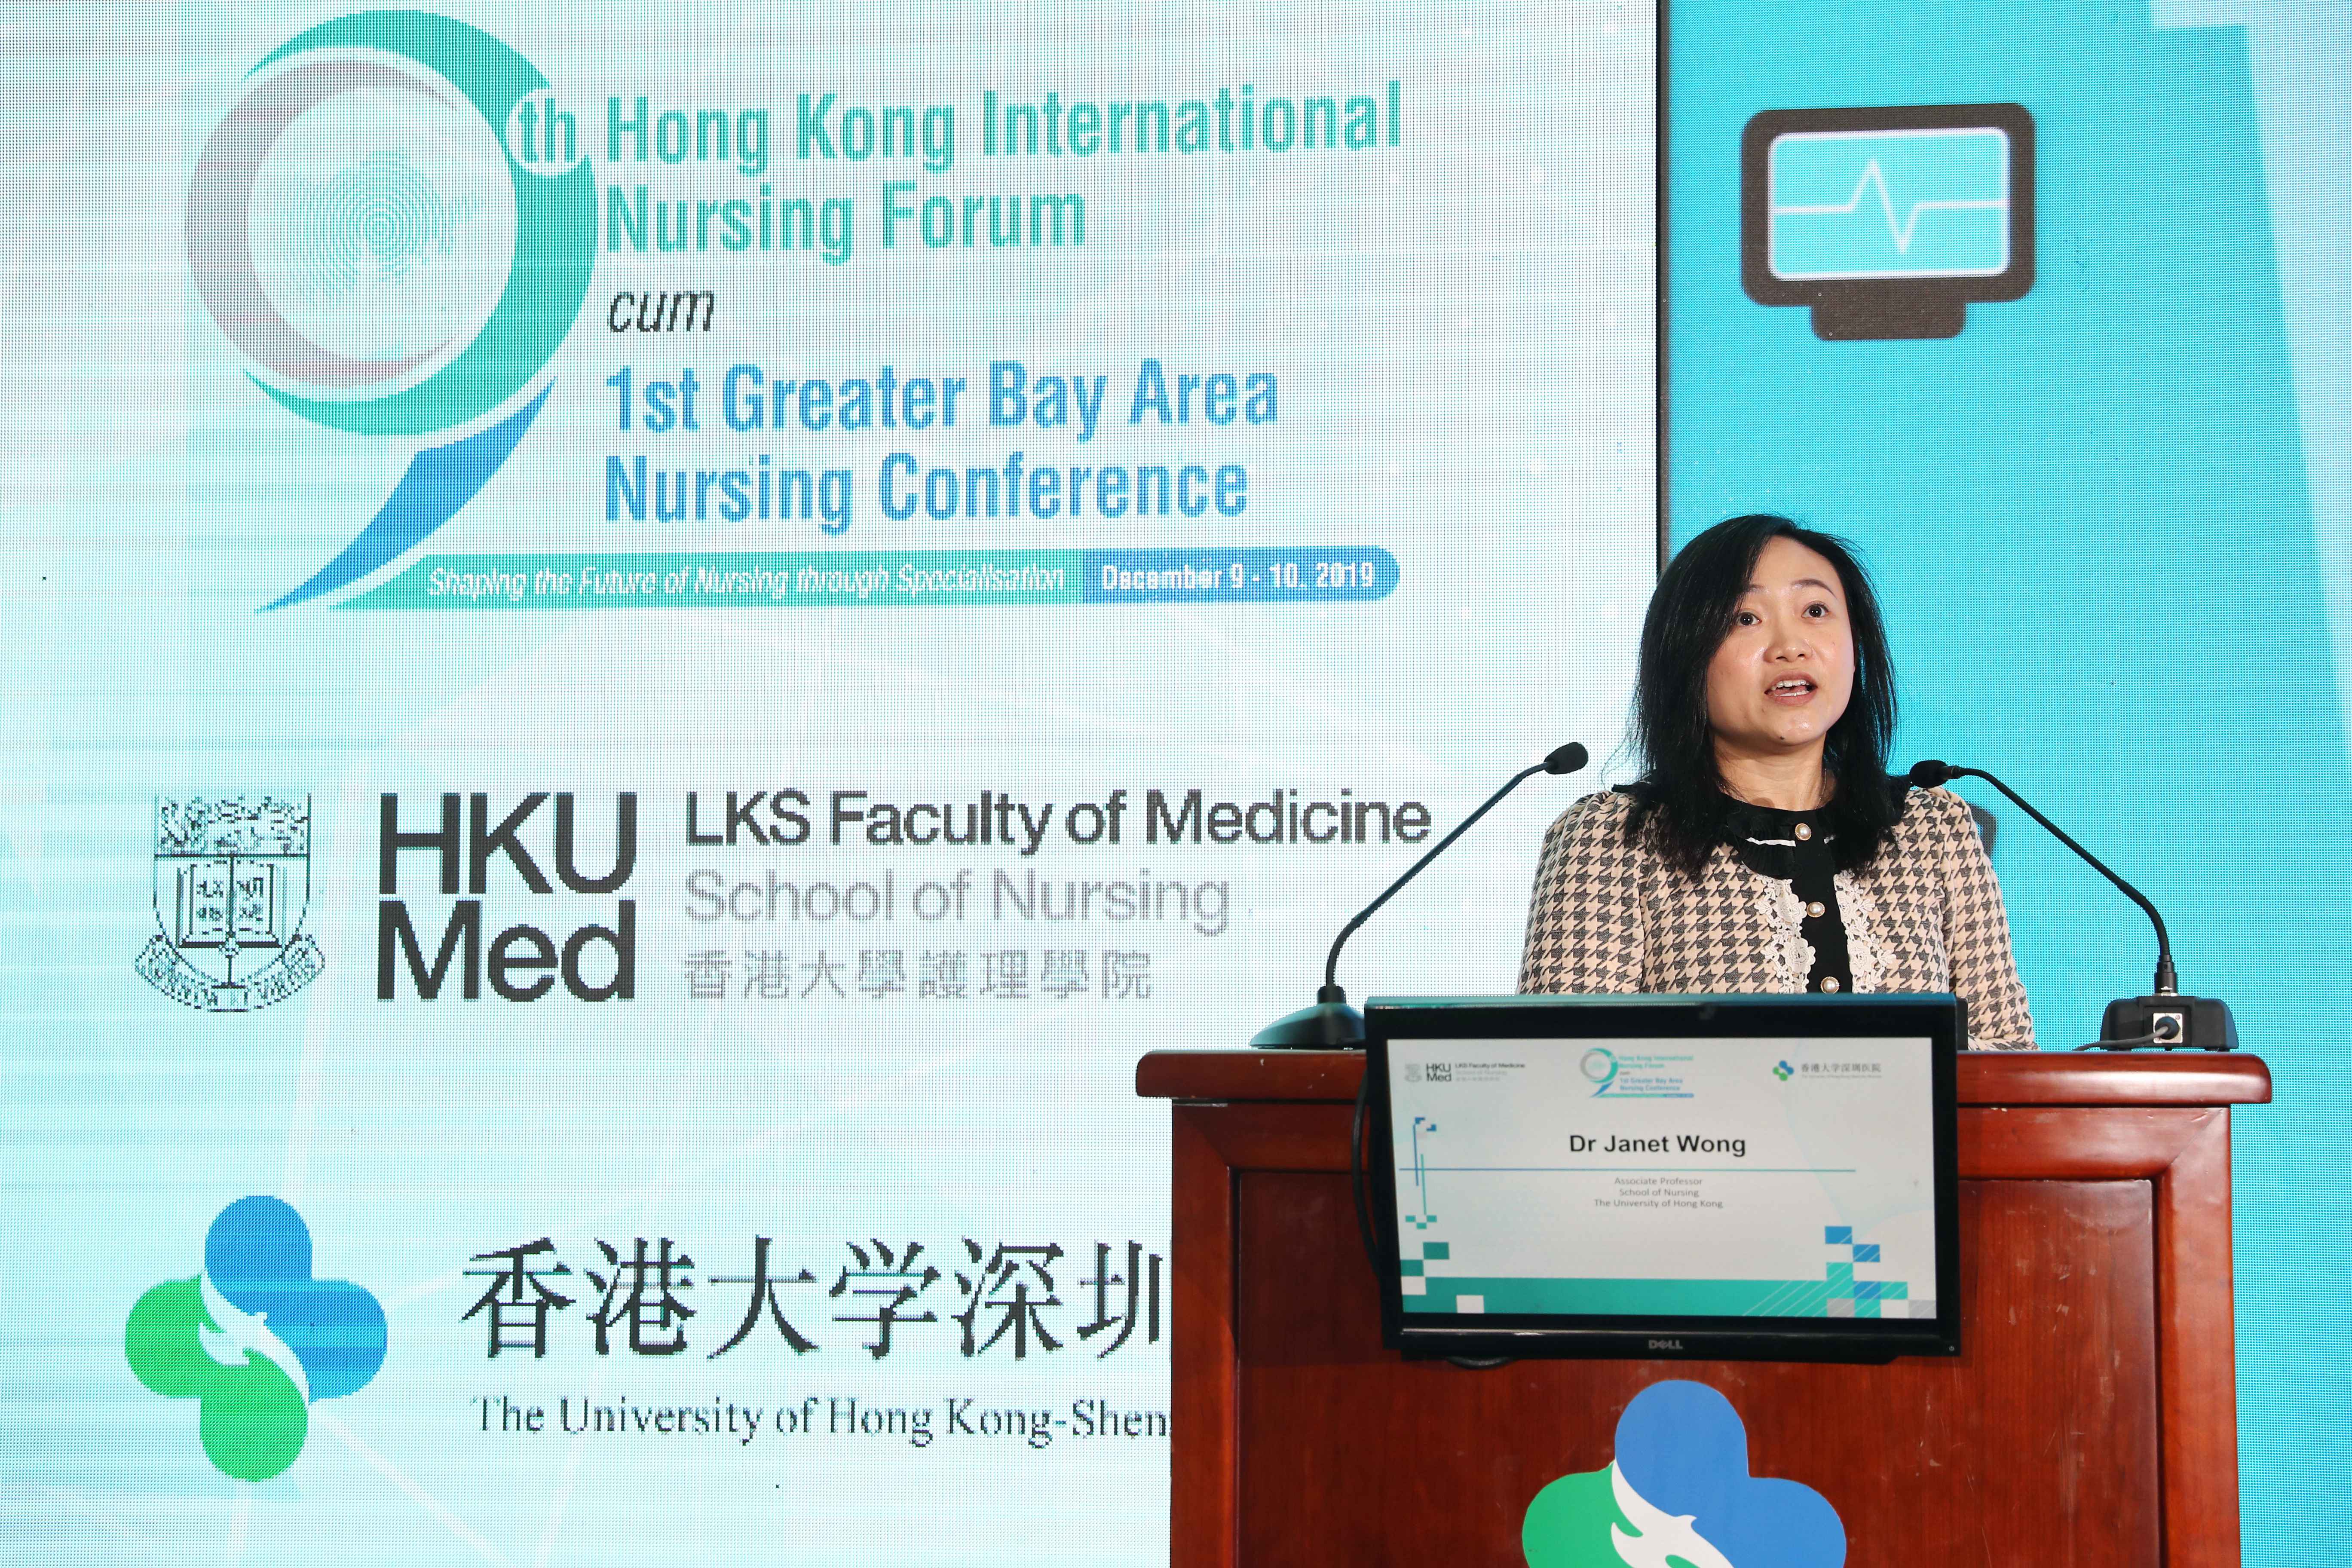 Dr Janet Wong